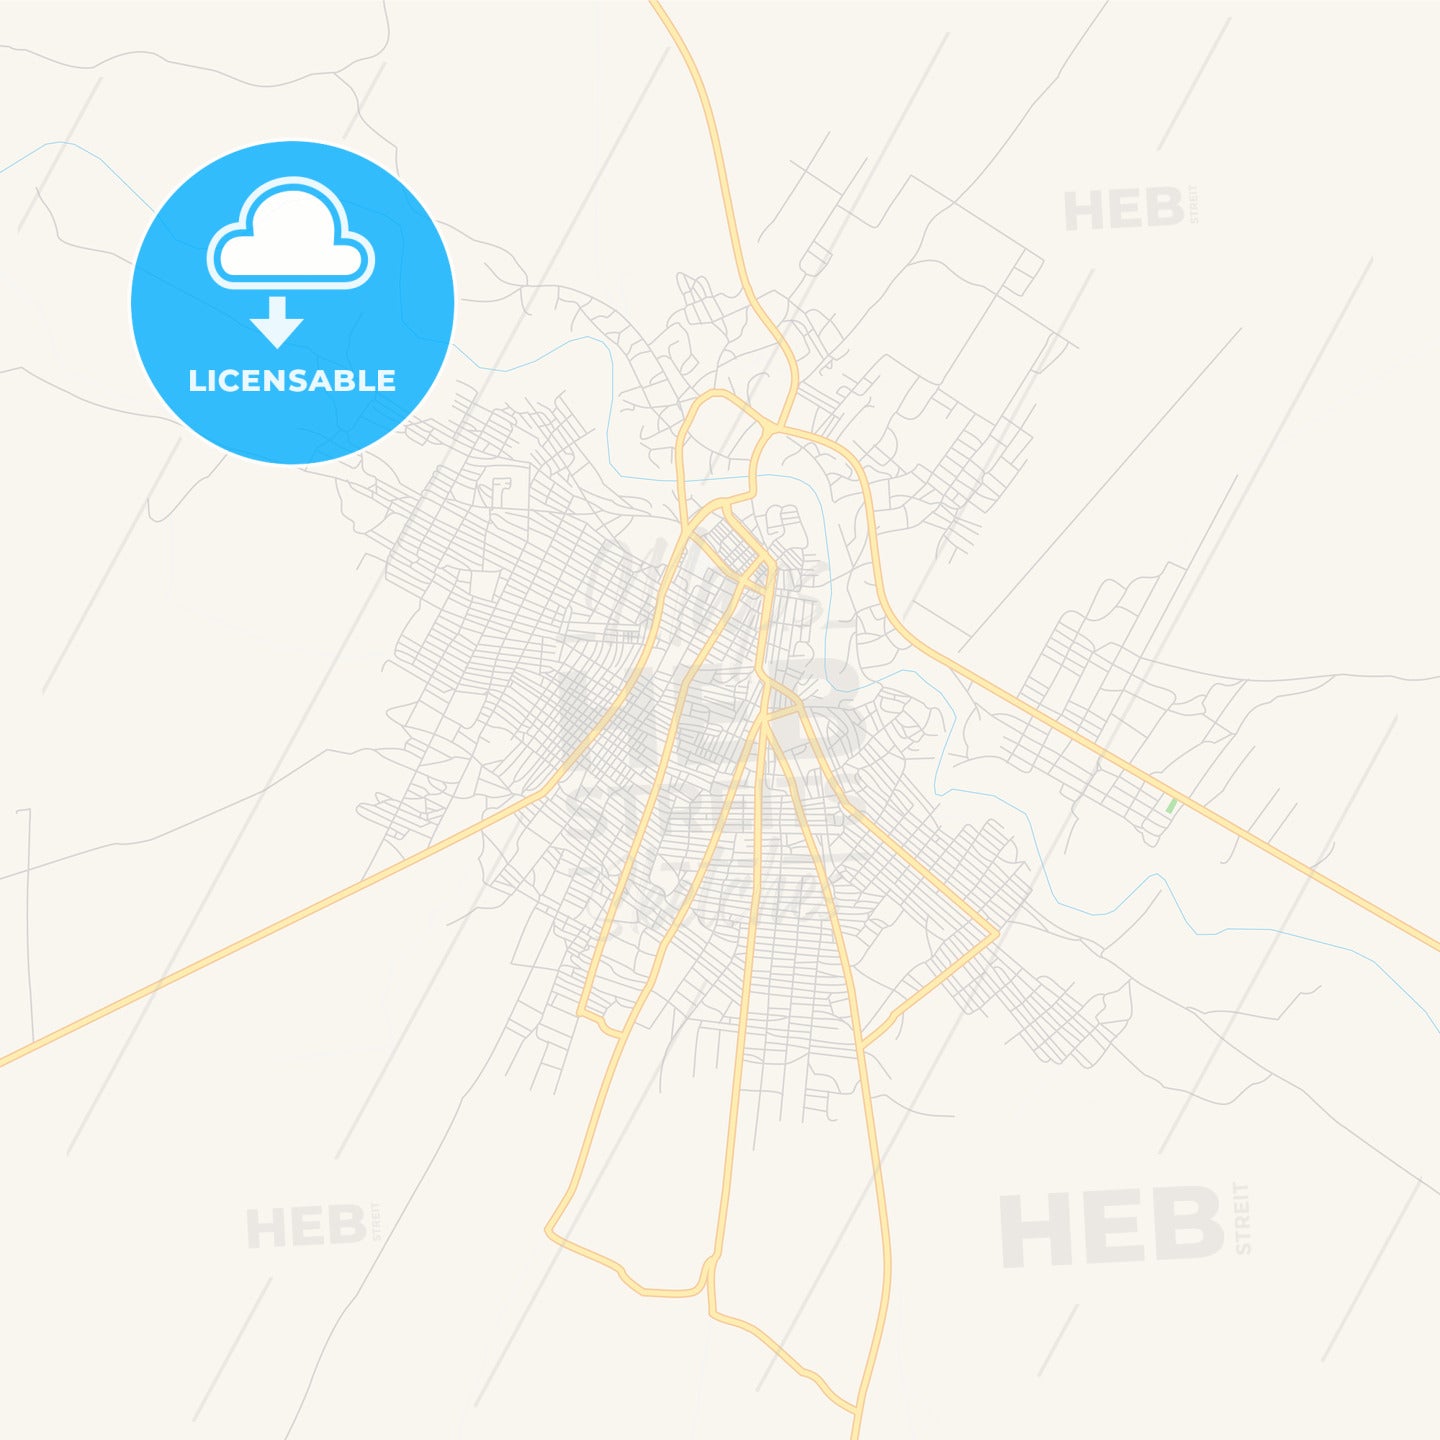 Printable street map of Burao, Somalia